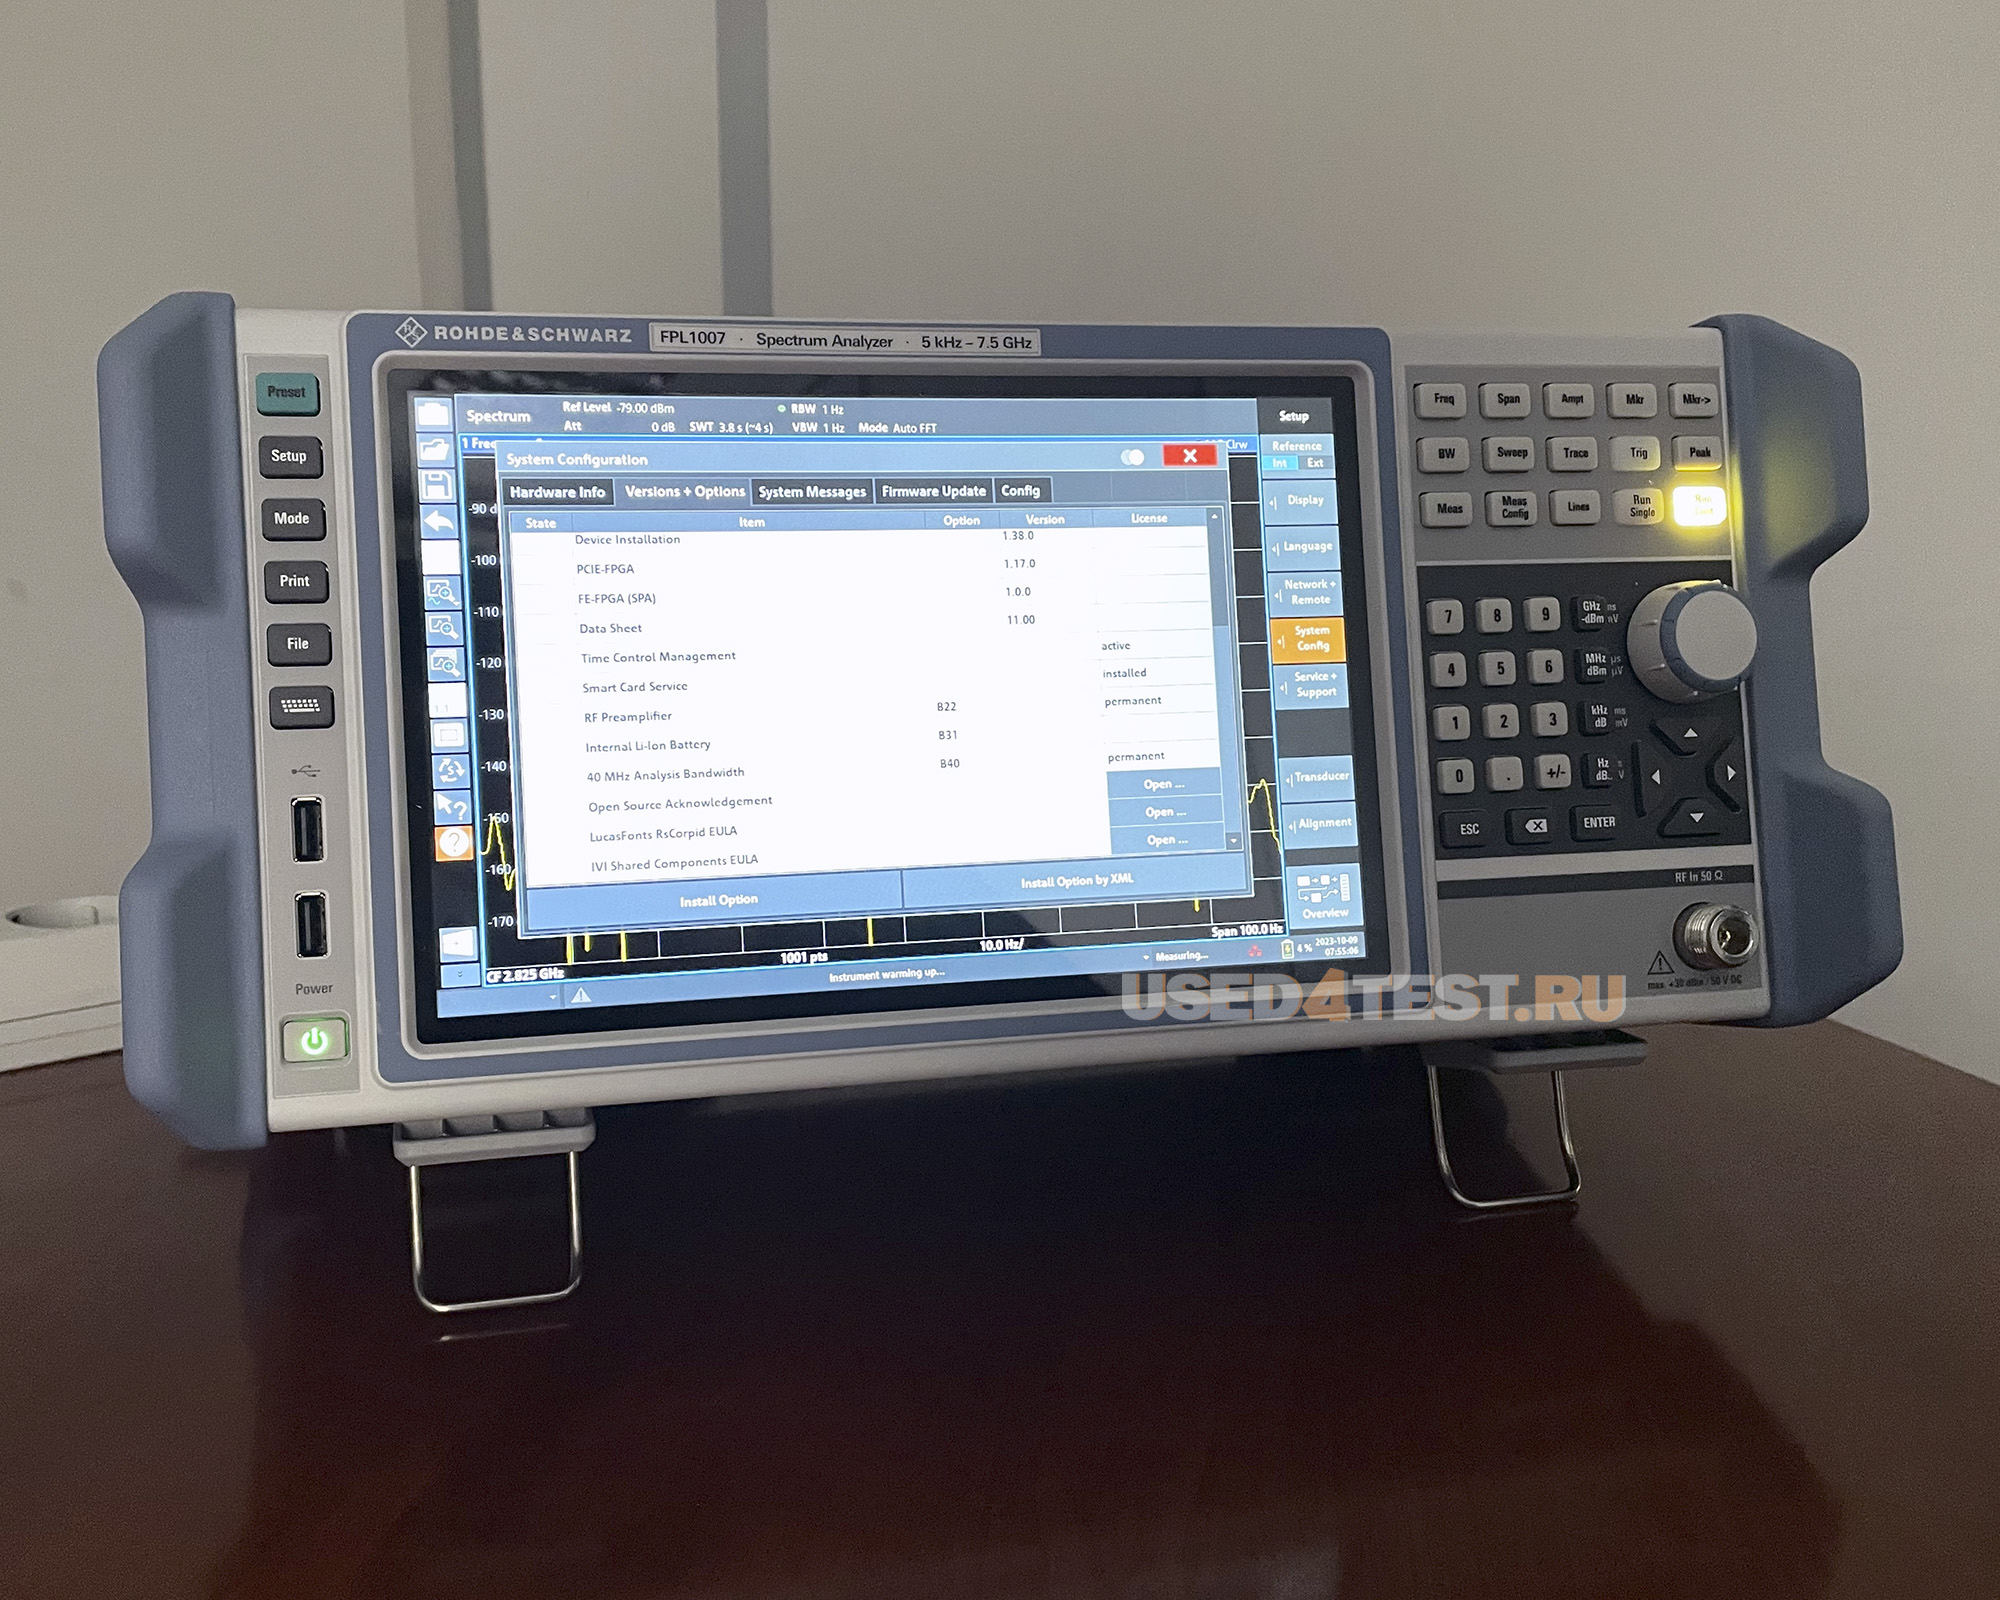 Анализатор спектра Rohde & Schwarz FPL1007
с диапазоном от 5 кГц до 7,5 ГГц

 В комплекте с опциями: 


	FPL1-B31 — Внутренний литий-ионный аккумулятор
	FPL1-B40 — Ширина полосы анализа 40 МГц
FPL1-B22 — ВЧ-предусилитель
